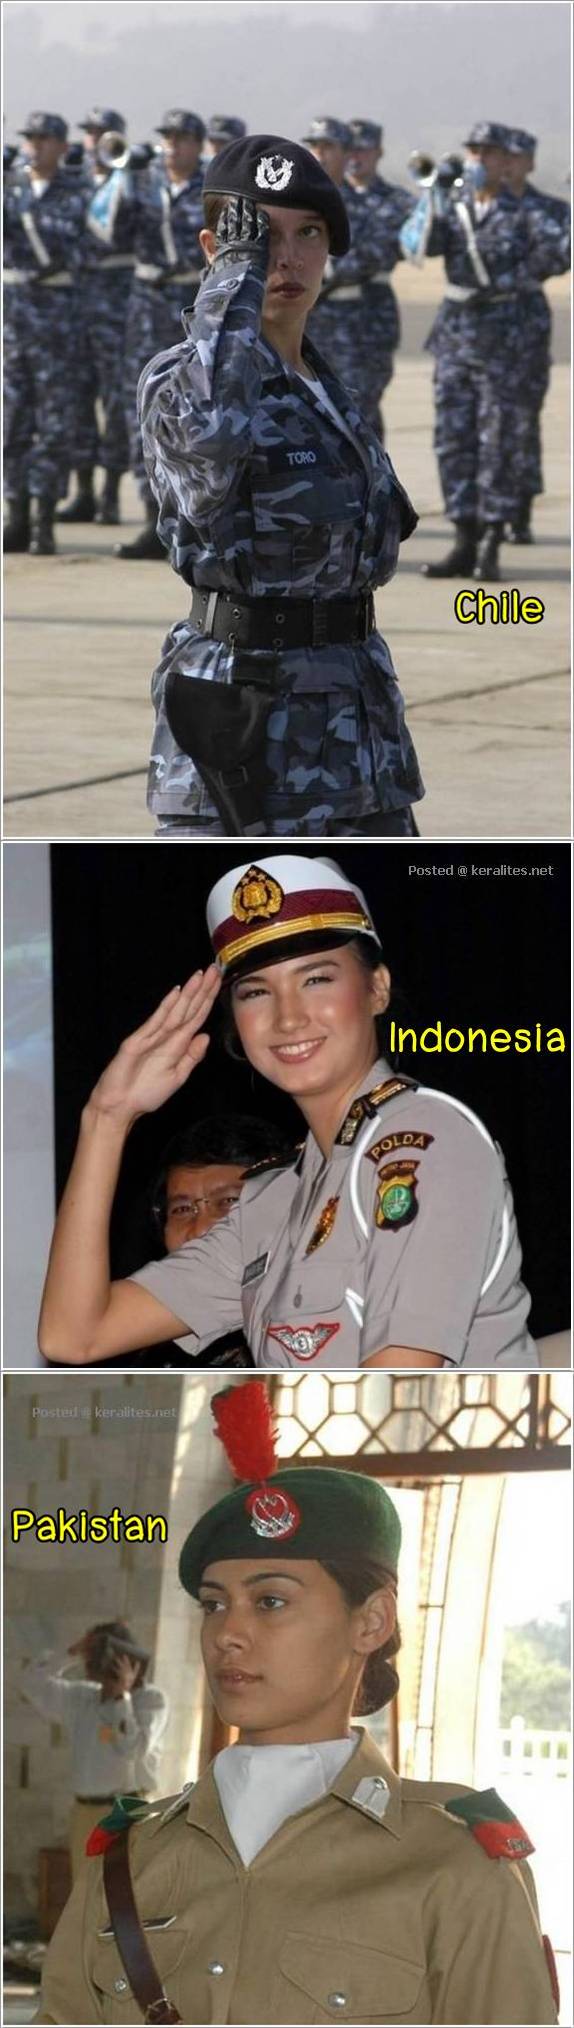 ทหารหญิงของแต่ละประเทศ